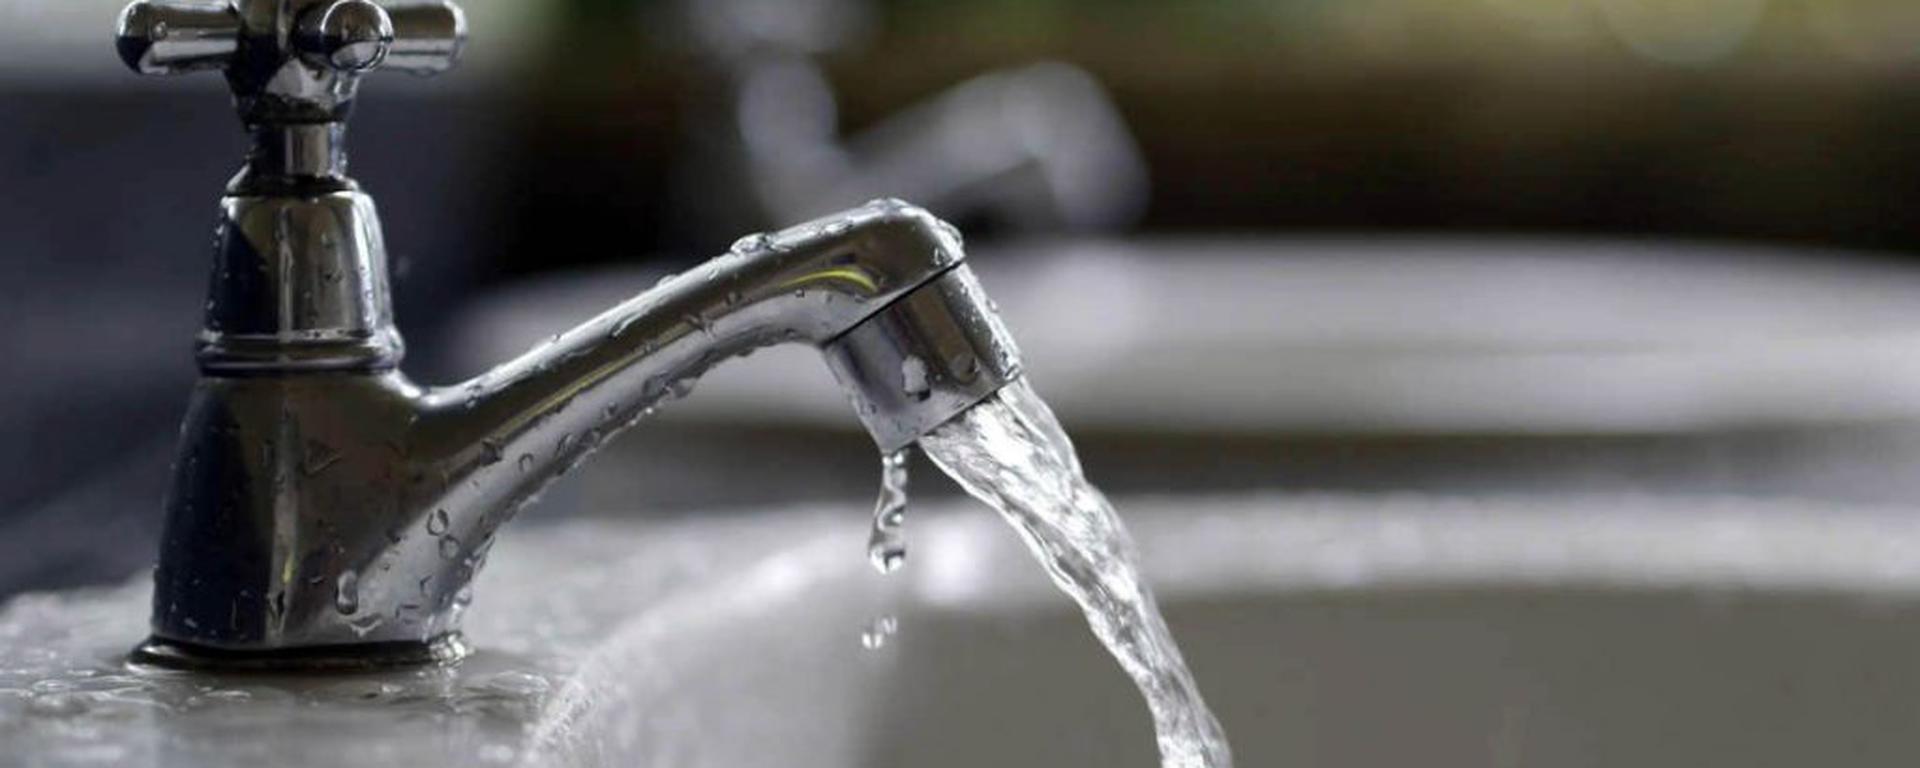 Presupuesto para la continuidad del servicio de agua durante El Niño tiene 9% de avance